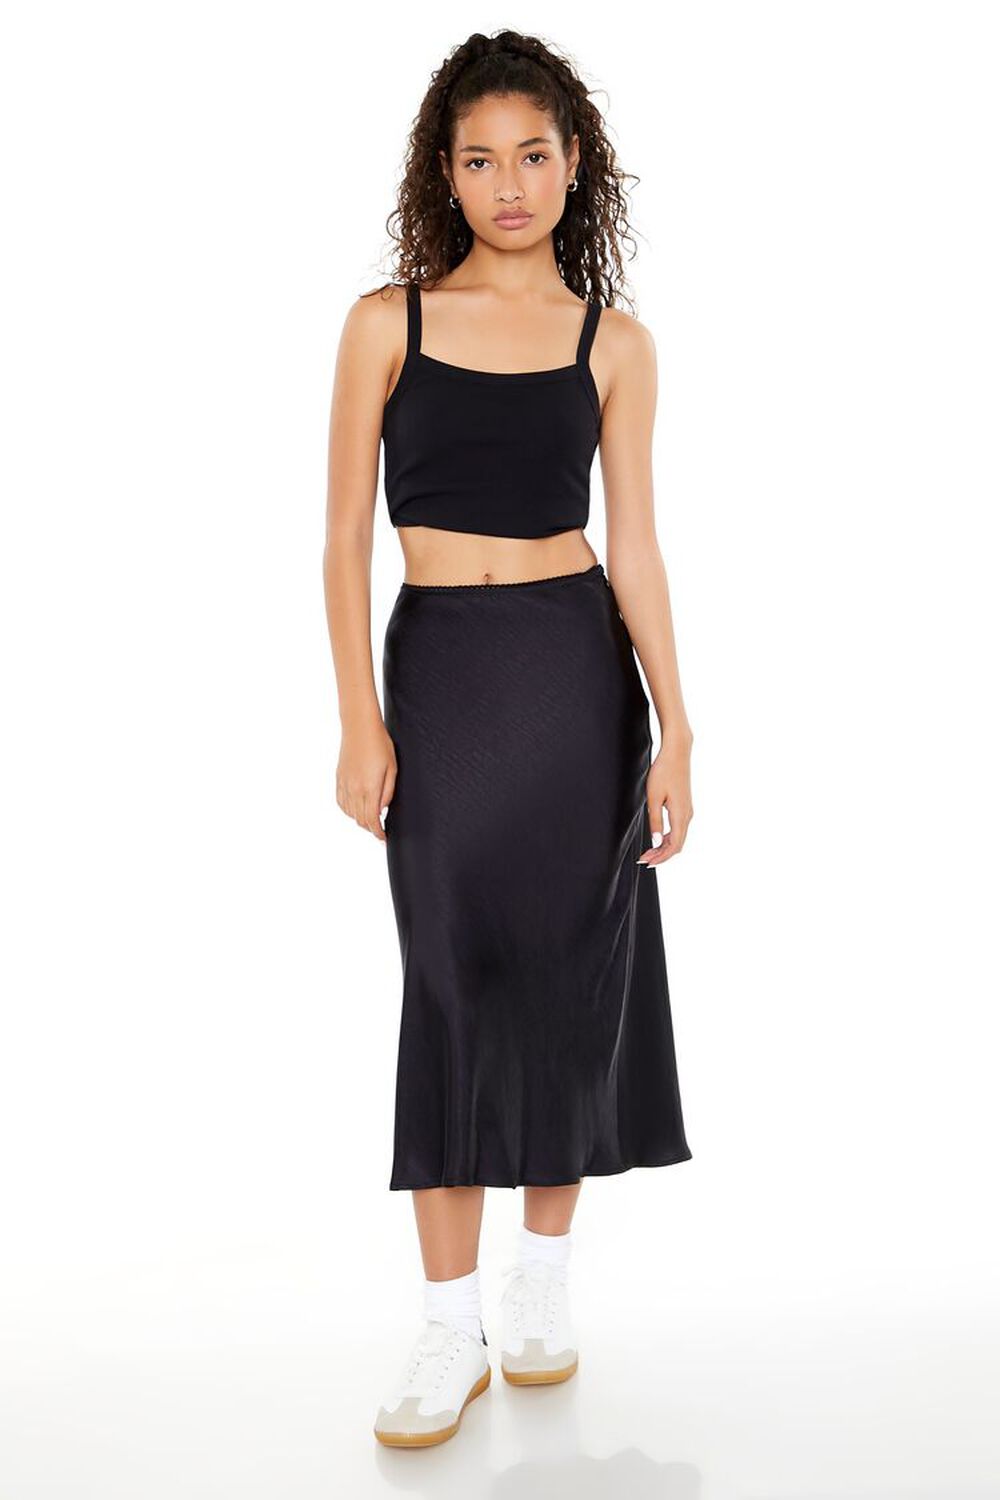 JET BLACK Satin Slip Midi Skirt, image 1